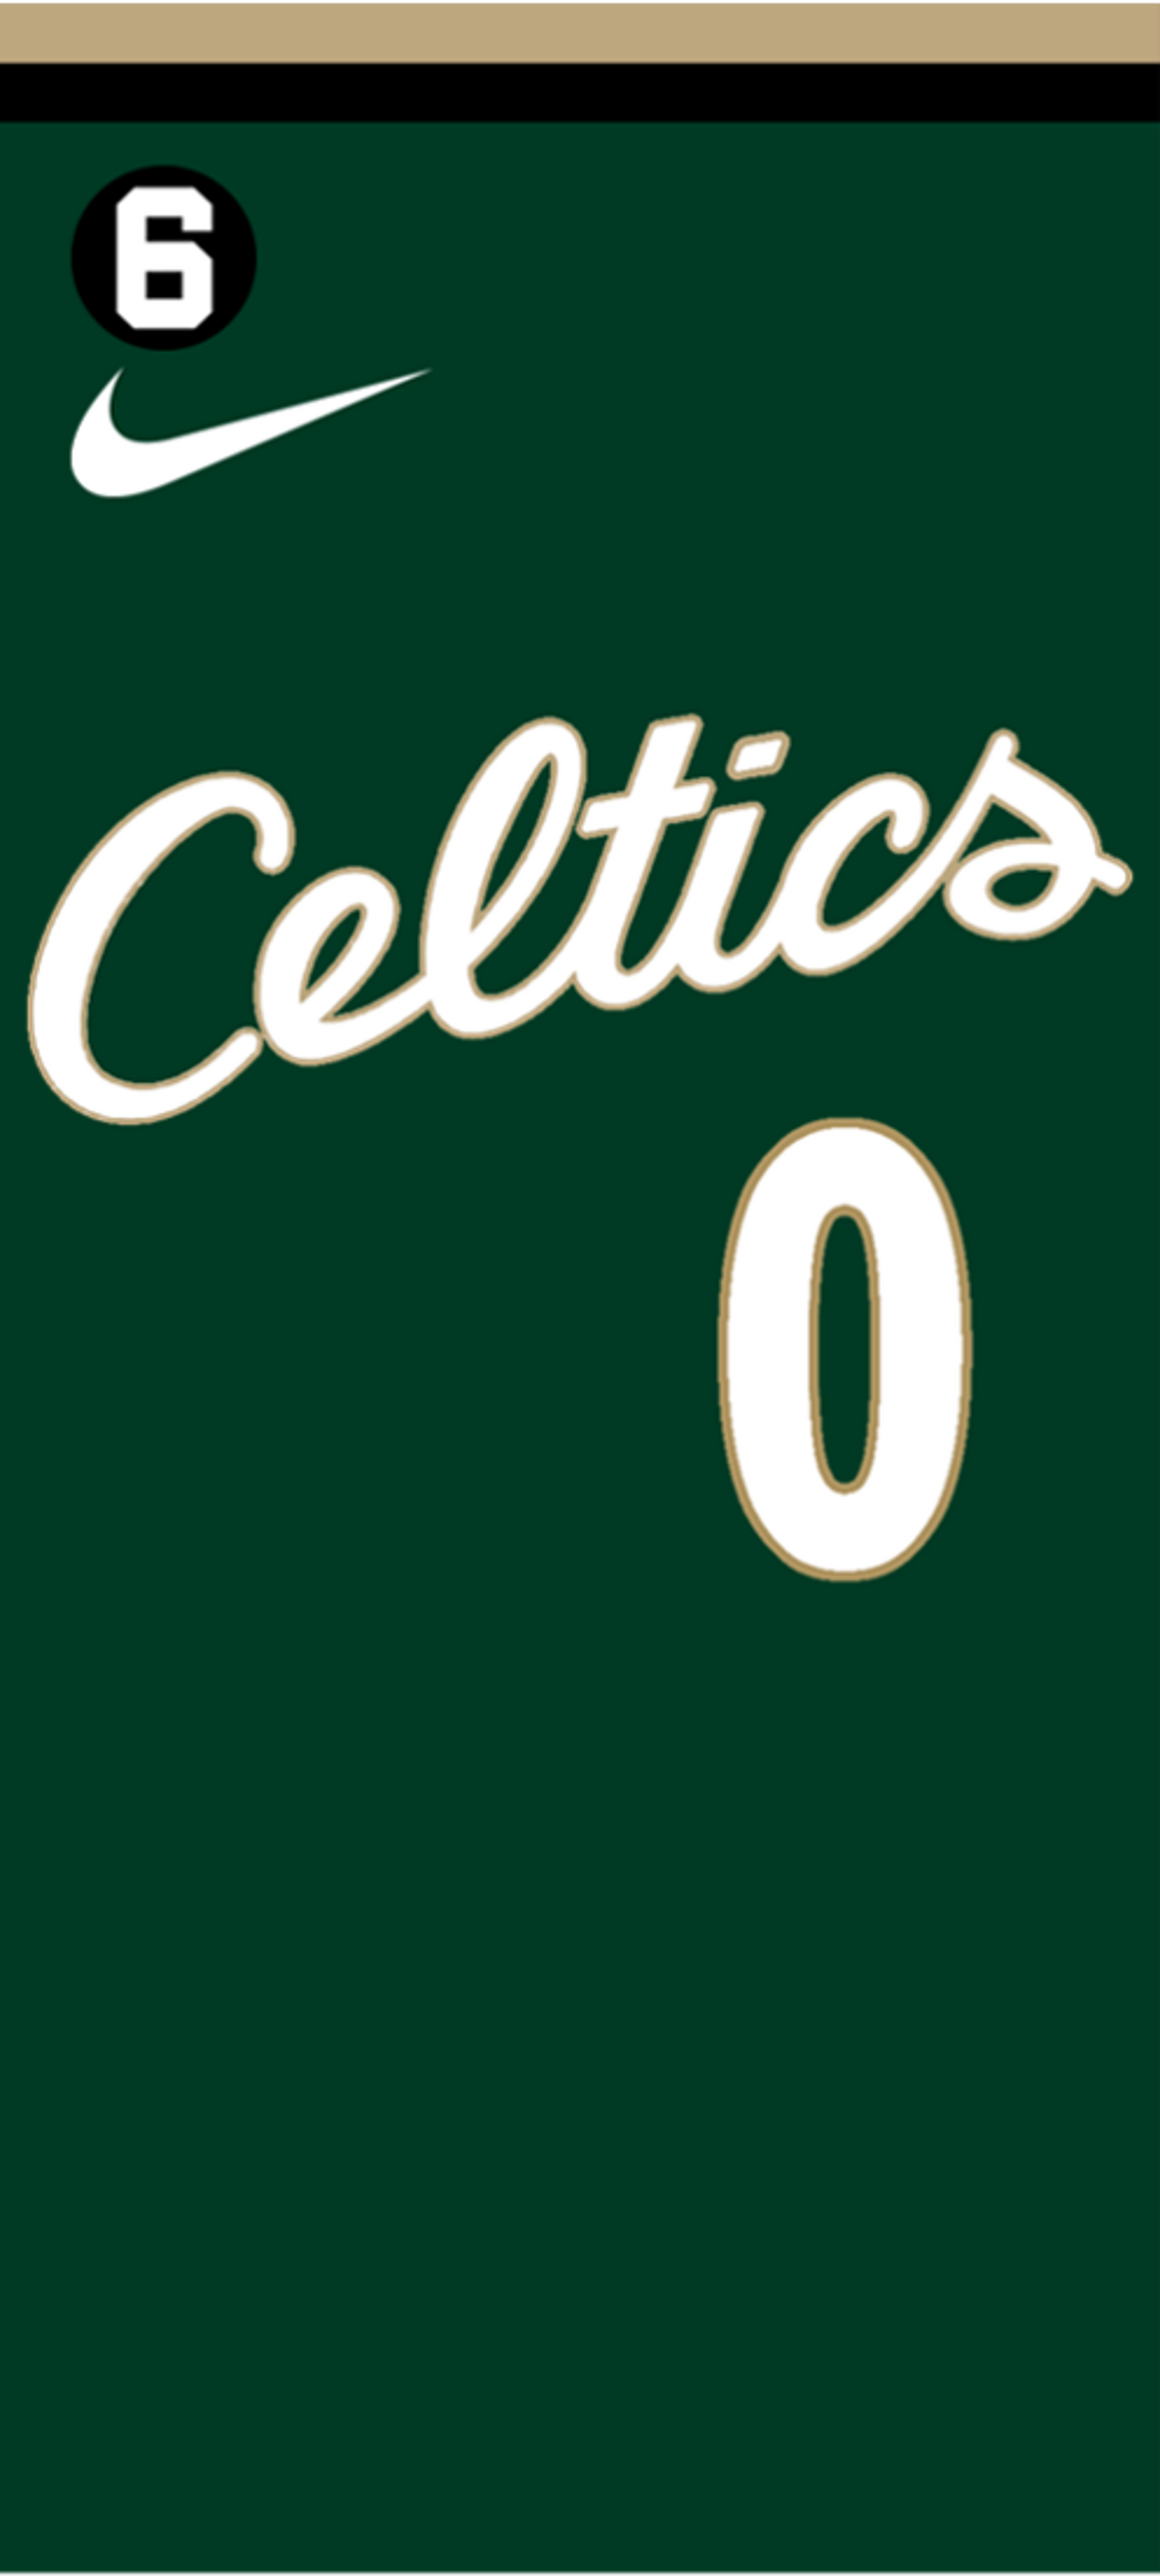 Boston Celtics City Edition Jerseys, Celtics 2022-23 City Jerseys